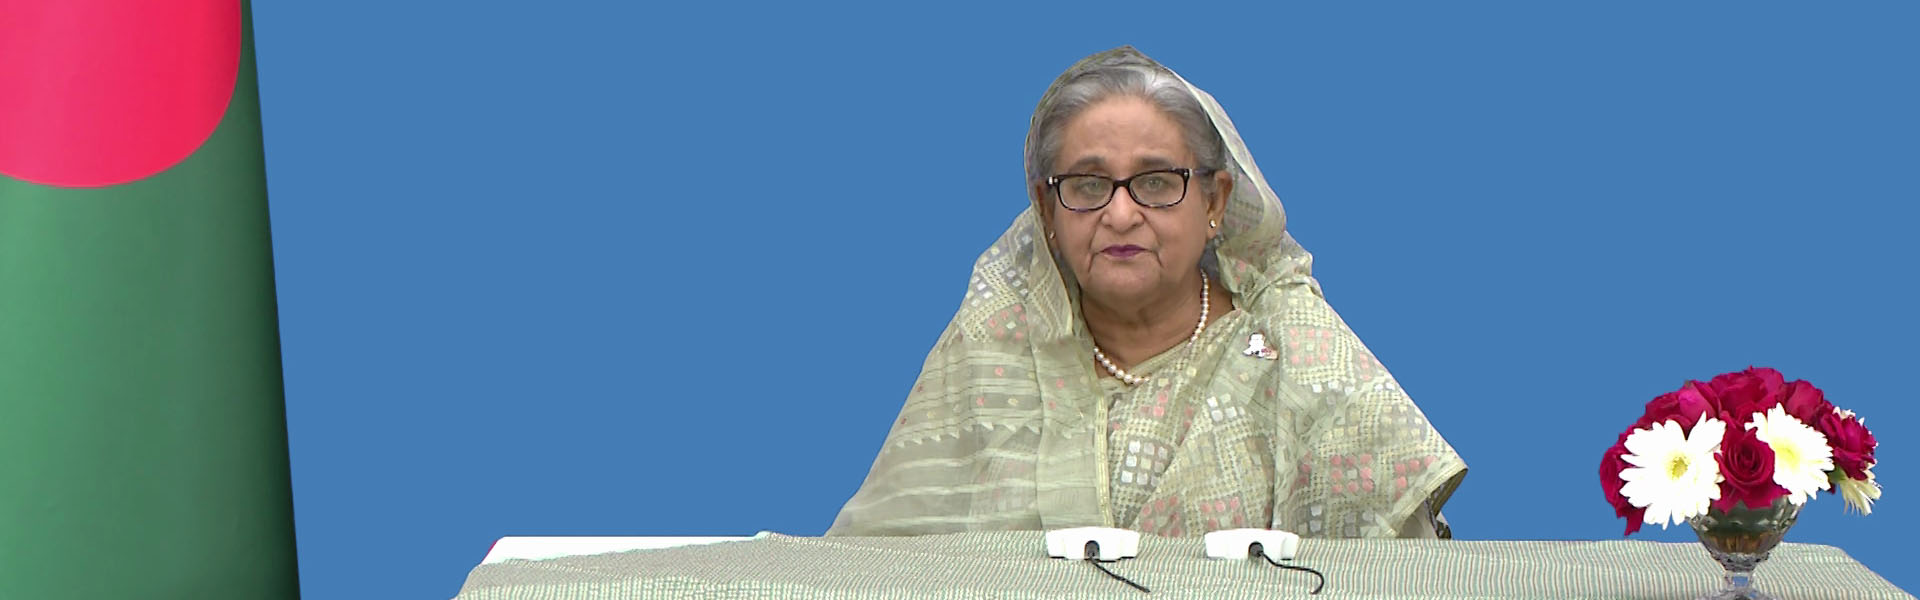 महामहिम शेख हसीना, माननीय प्रधान मंत्री, बांग्लादेश जनवादी गणराज्य की सरकार ने 'मैत्री दिवस: भारत की 50 वीं वर्षगांठ - बांग्लादेश राजनयिक संबंध', 6 दिसंबर 2021 को वीडियो संदेश दिया।